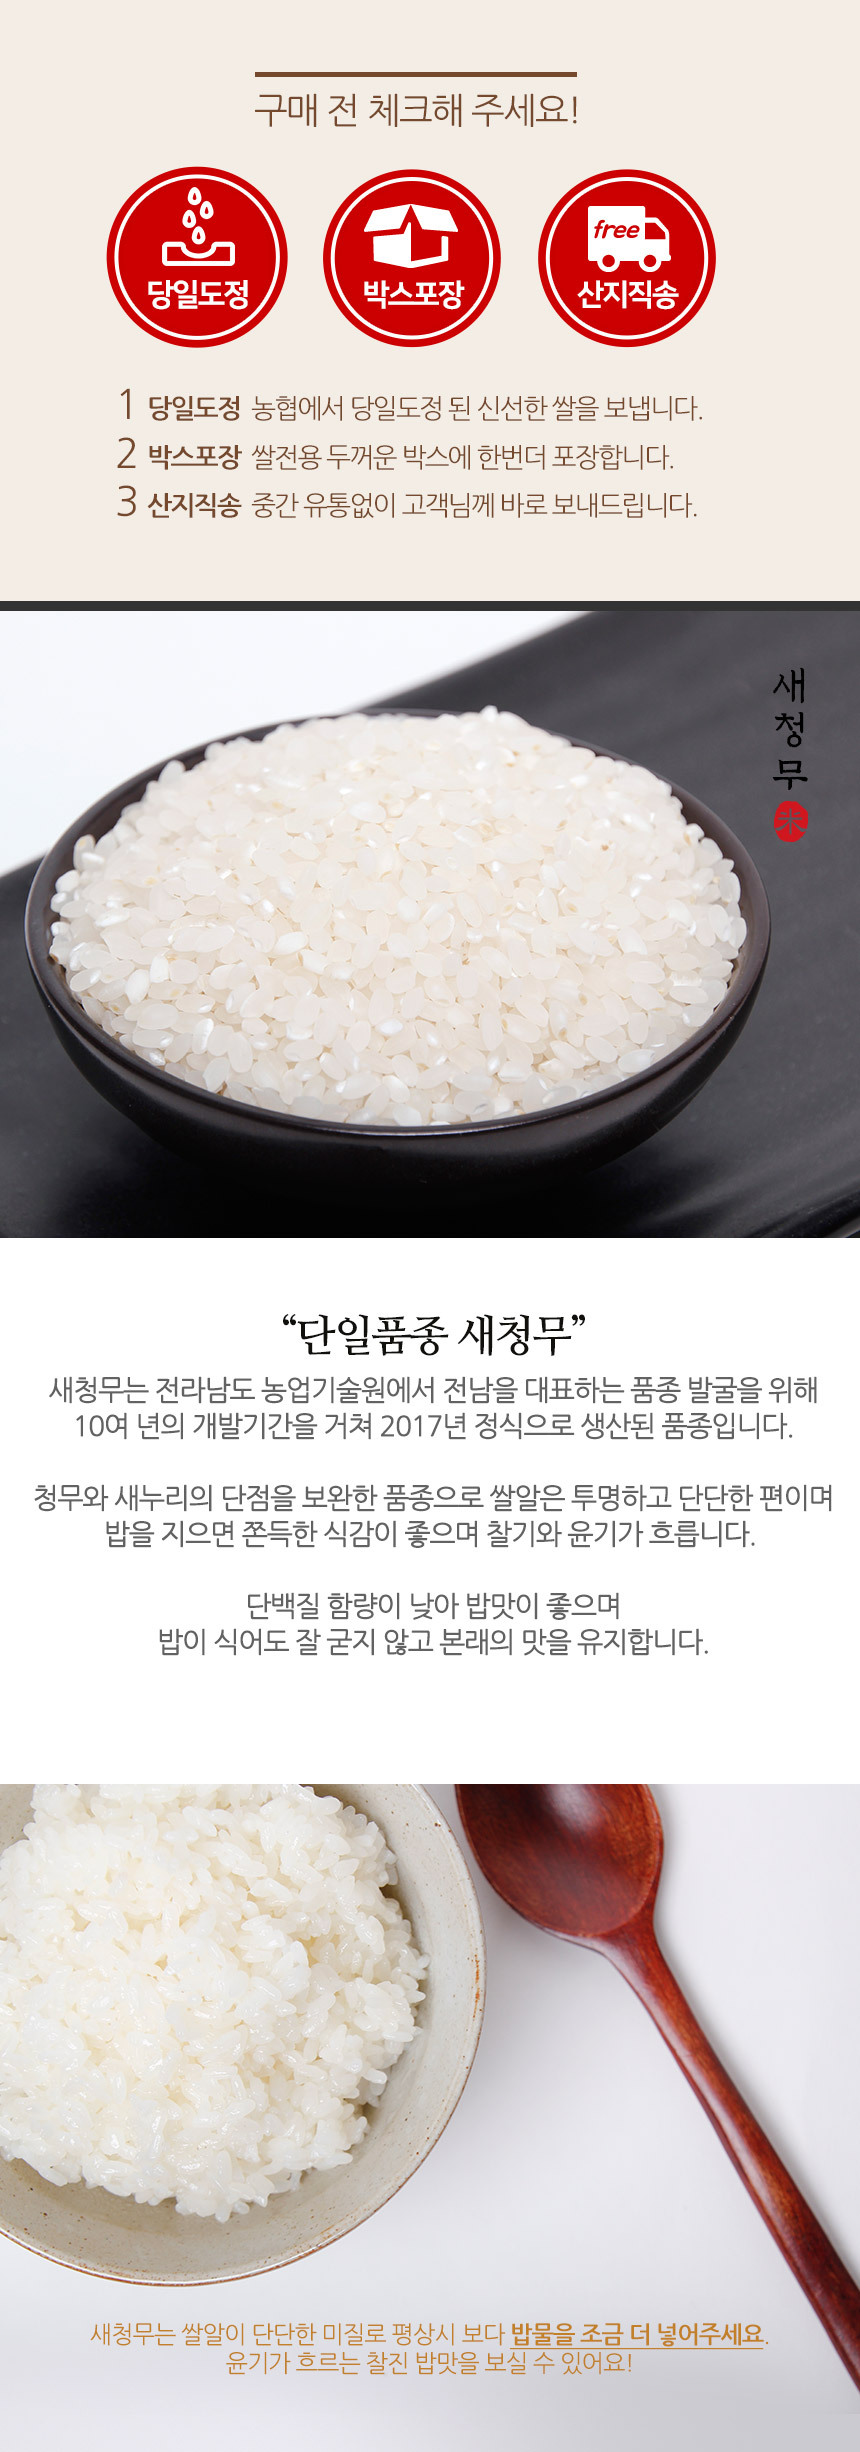 韓國食品-[NH] 정남진 새청무 쌀 4kg